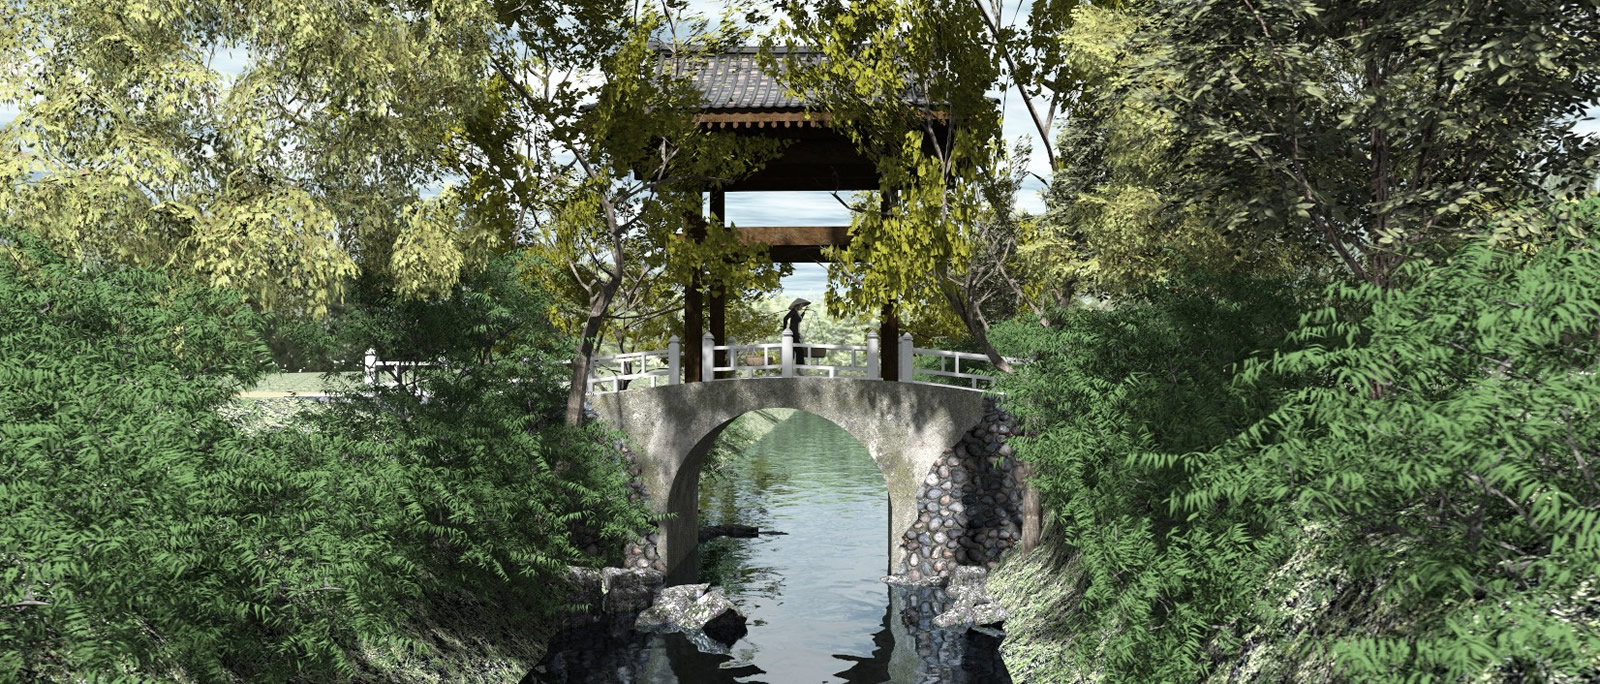 Korean country bridge render 3.jpg